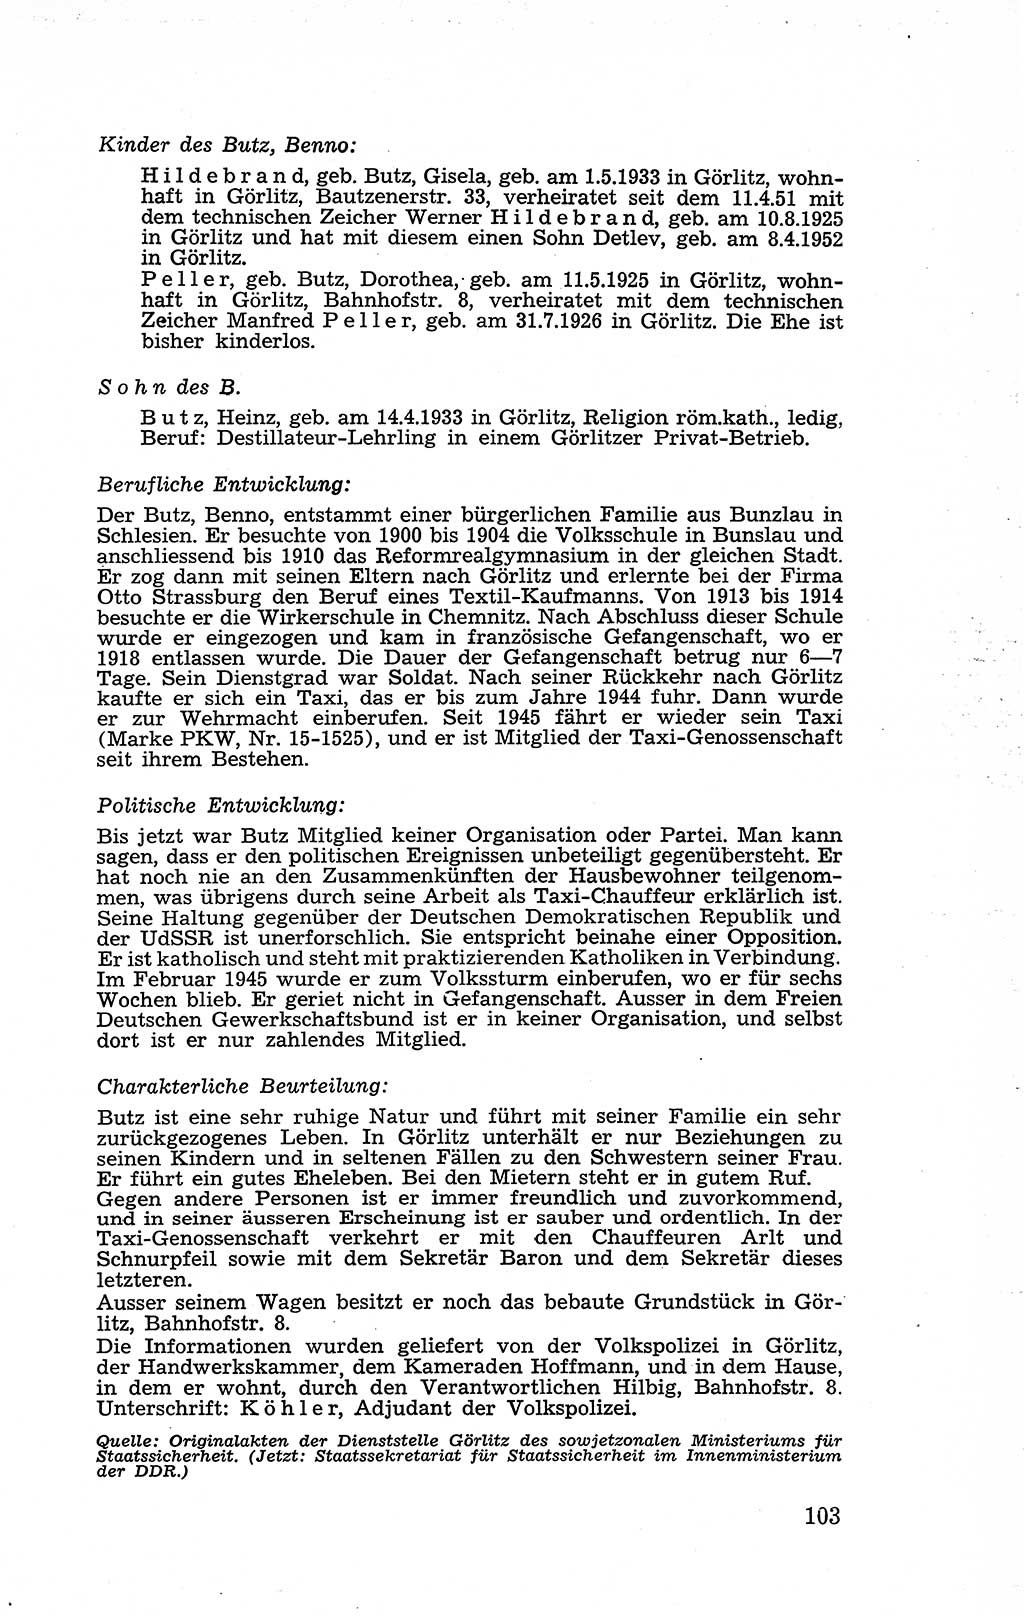 Recht in Fesseln, Dokumente, Internationale Juristen-Kommission [Bundesrepublik Deutschland (BRD)] 1955, Seite 103 (R. Dok. IJK BRD 1955, S. 103)